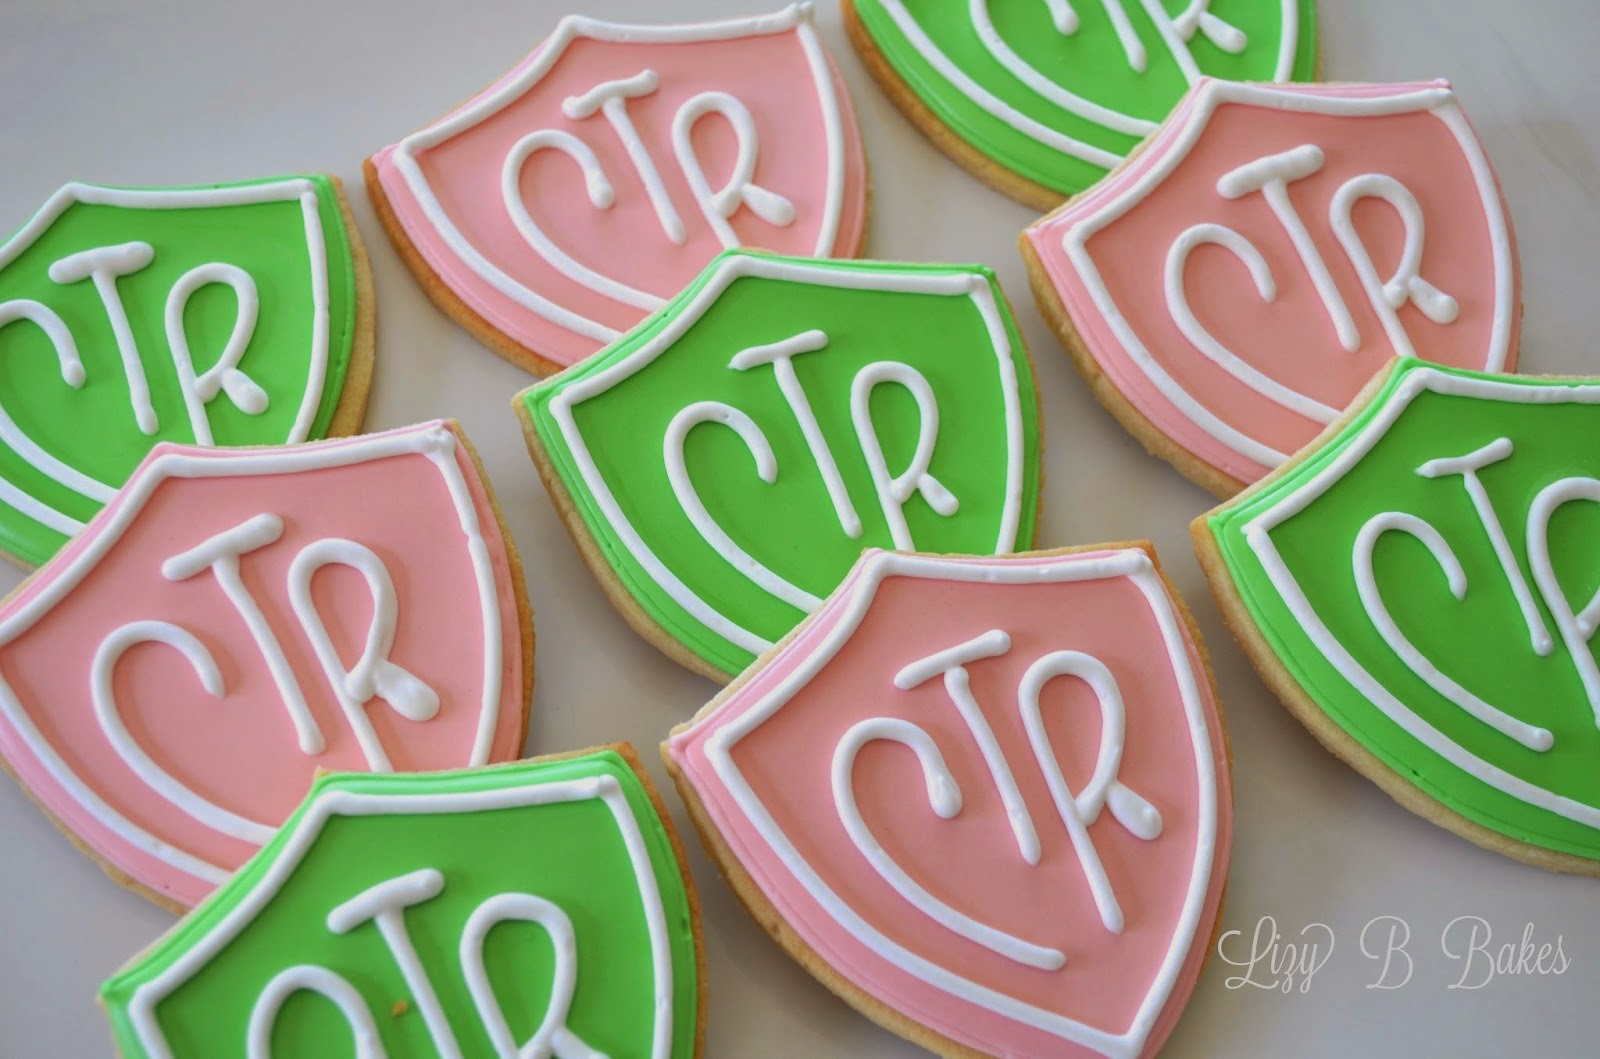 CTR Cookies